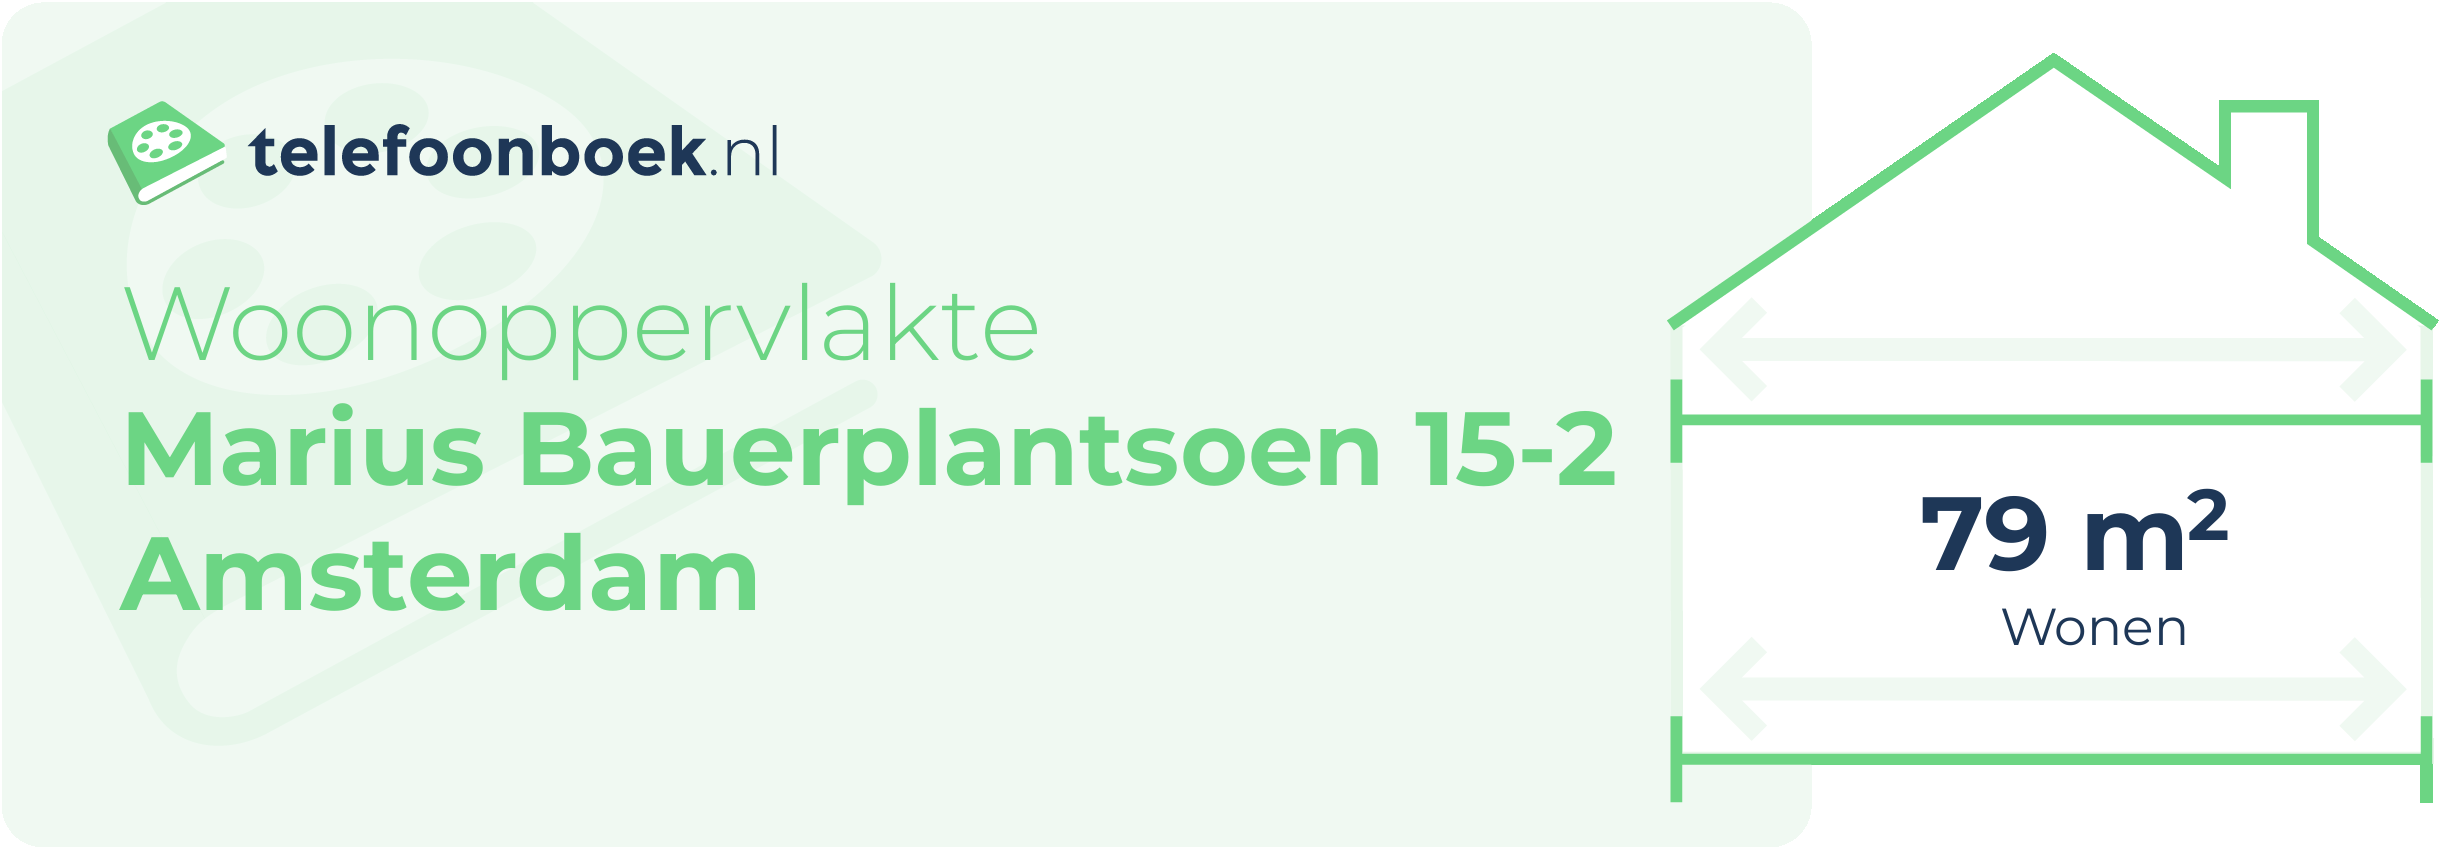 Woonoppervlakte Marius Bauerplantsoen 15-2 Amsterdam